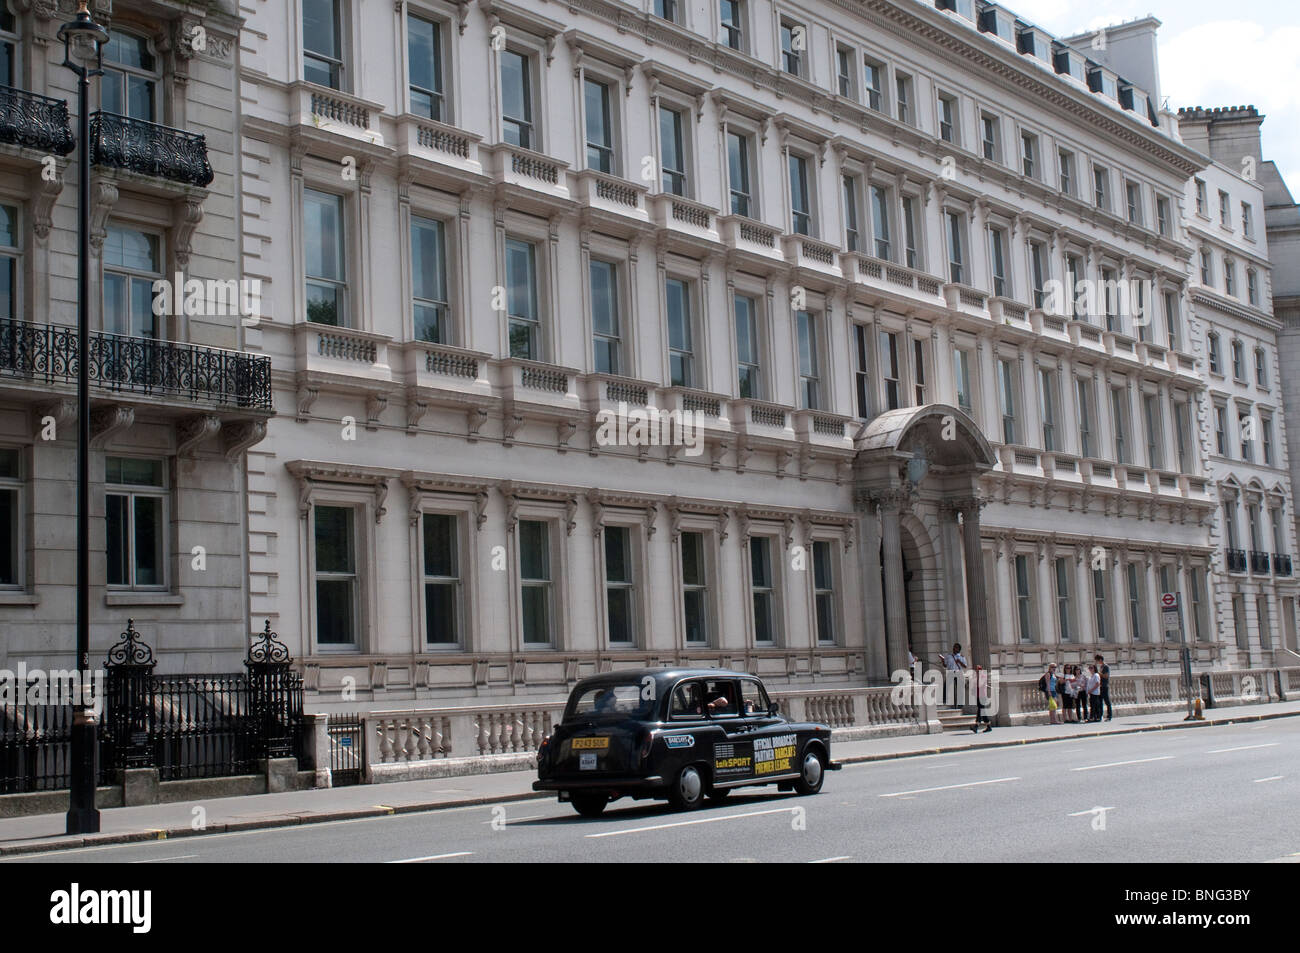 Taxi on Buckingham Palace Road, London, UK Stock Photo